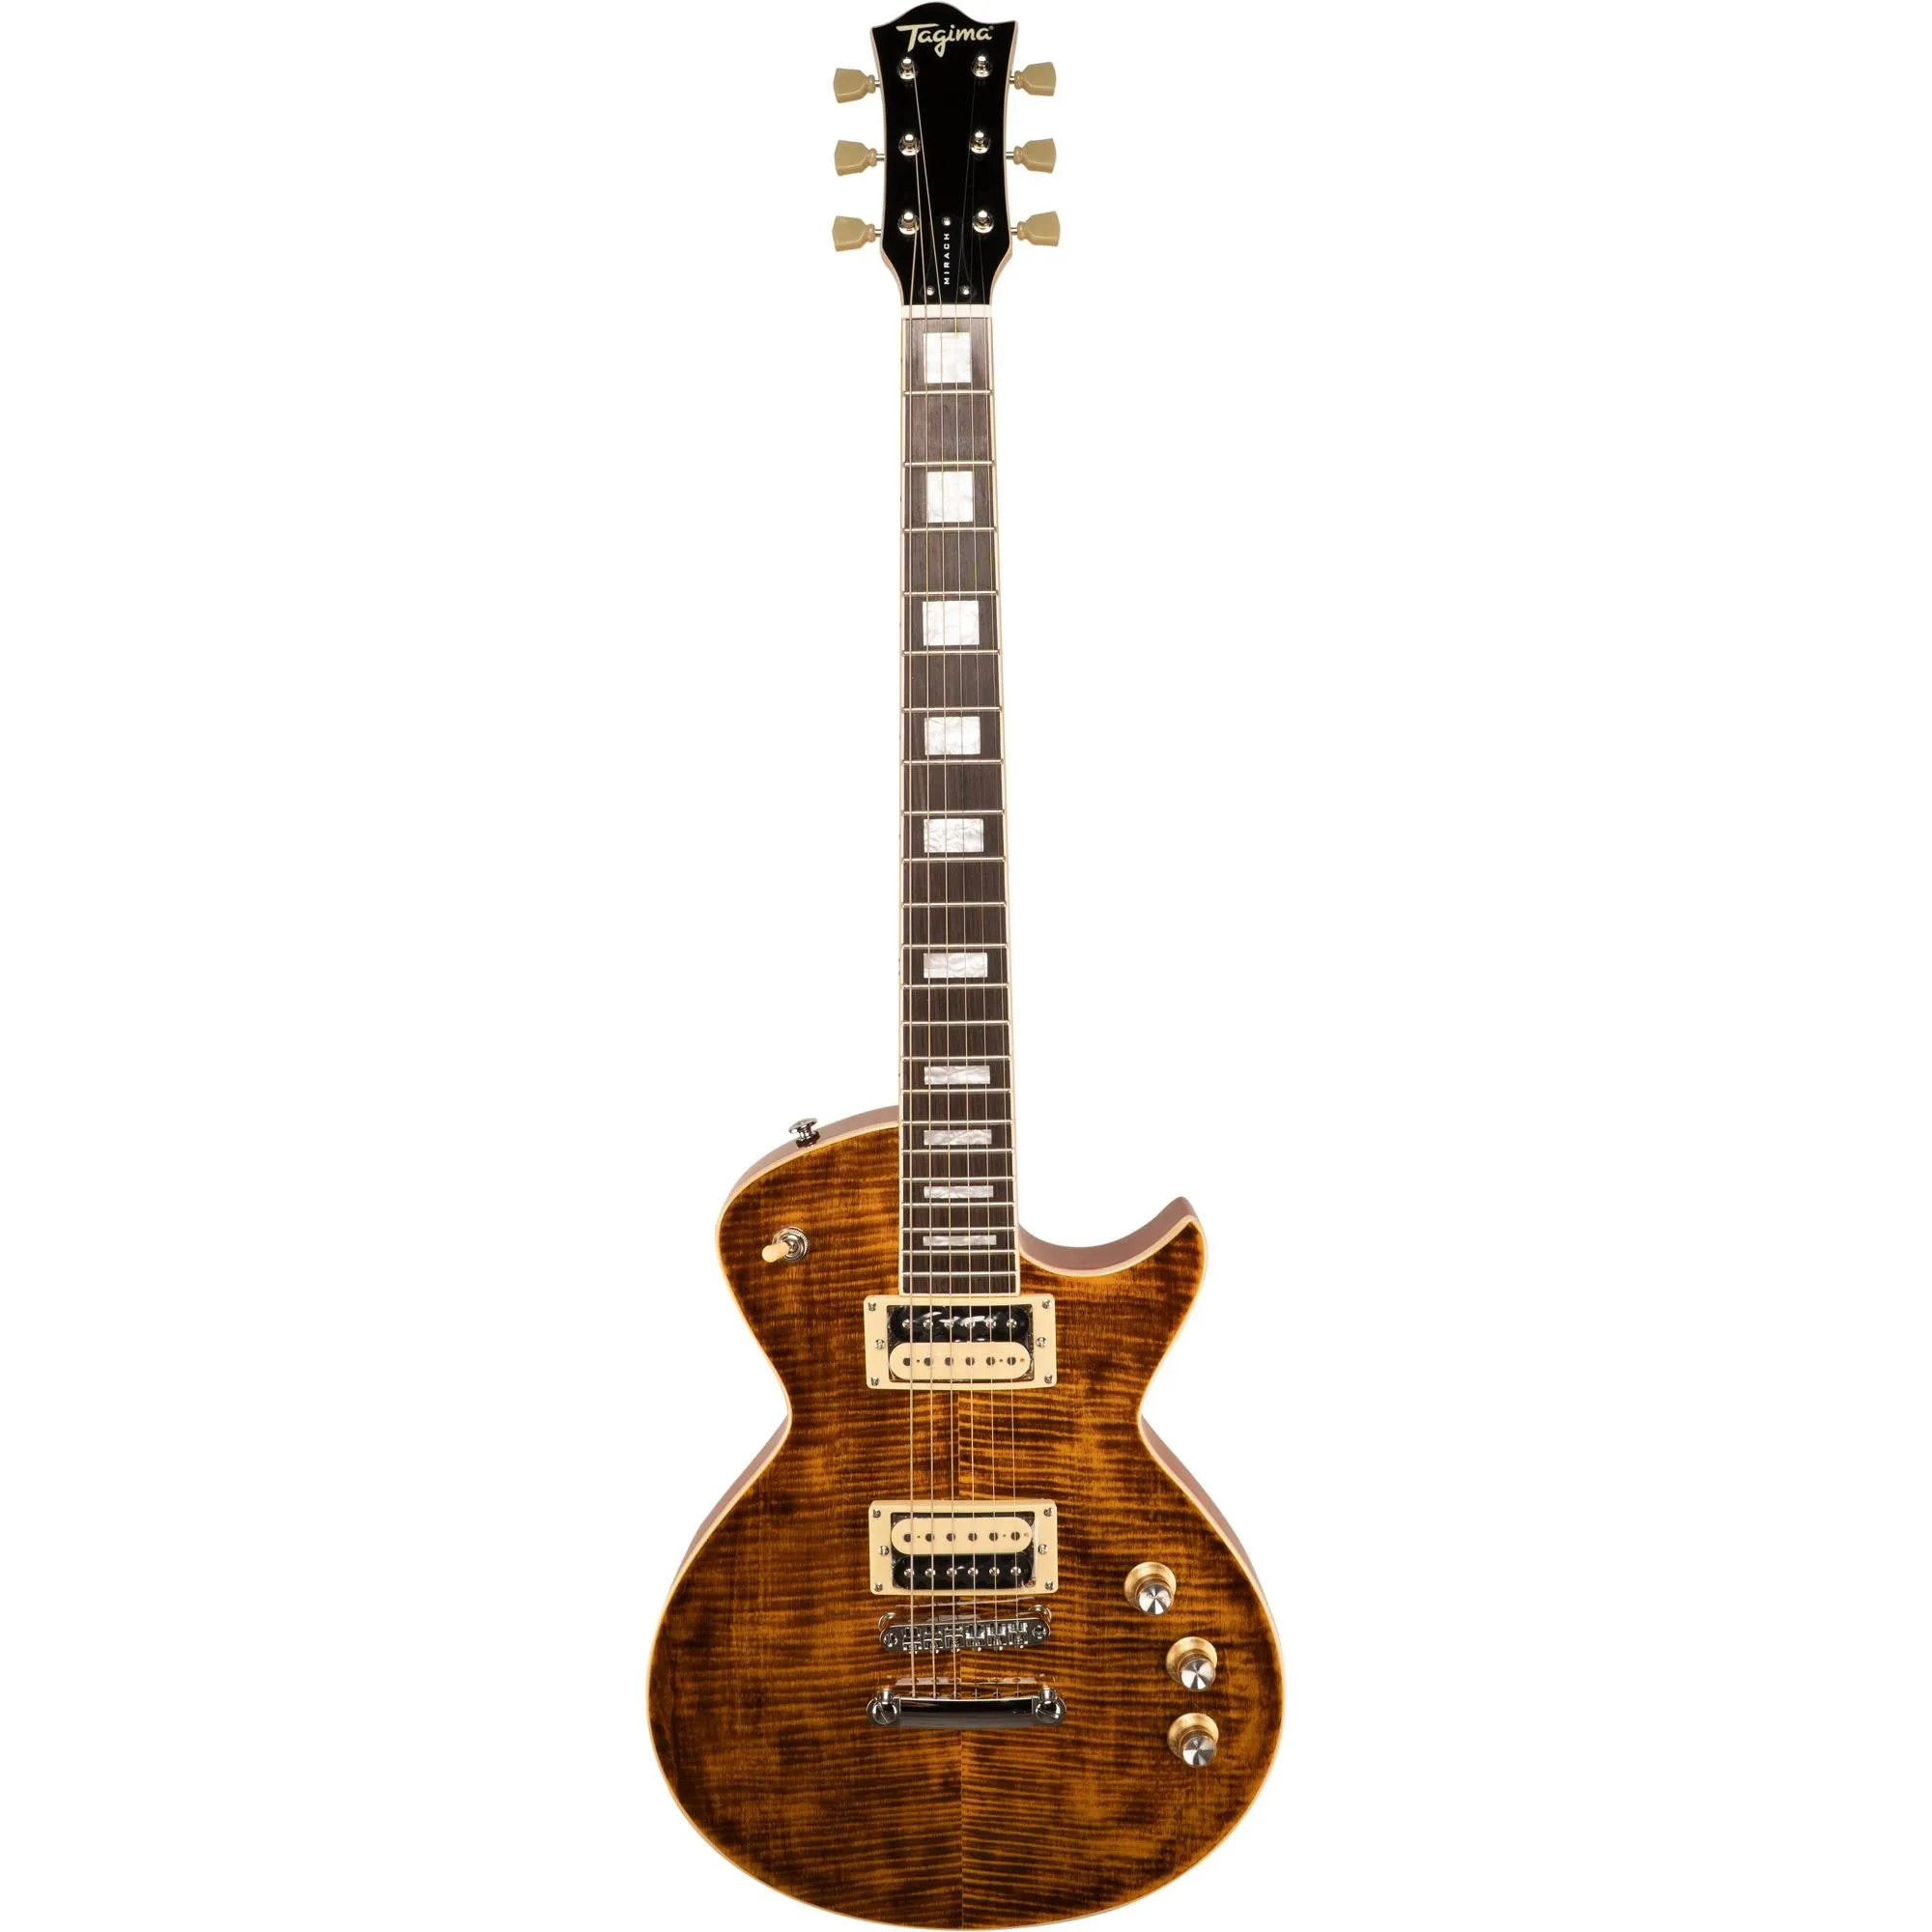 Guitarra Tagima Mirach FL Transparent Amber C/ Case por 4.299,99 à vista no boleto/pix ou parcele em até 12x sem juros. Compre na loja Mundomax!